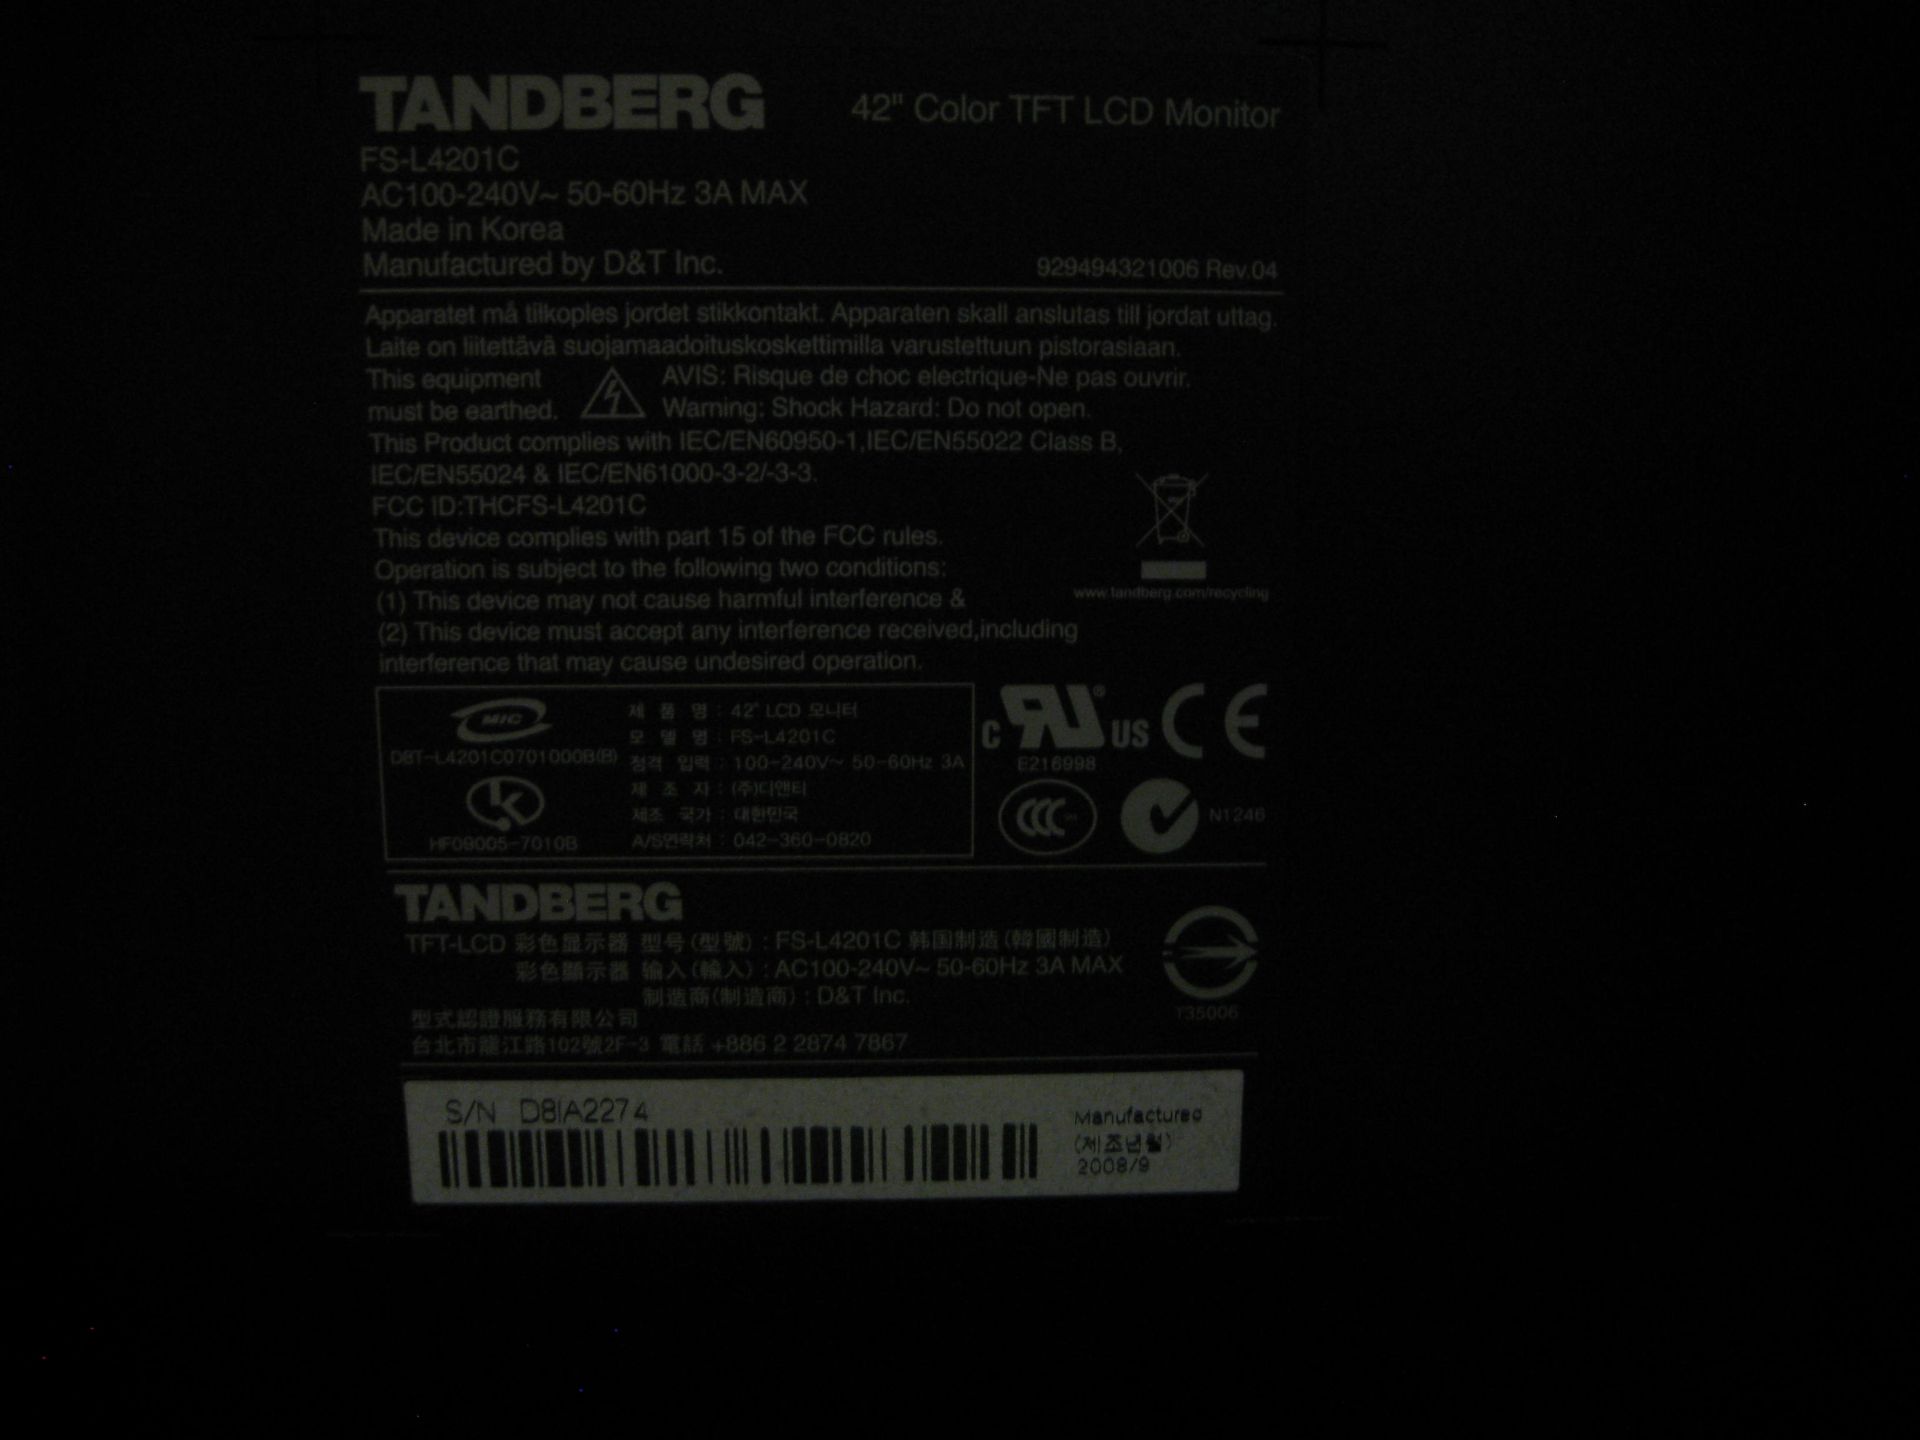 TANDBERG MXP VIDEO CONFERENCING SYSTEM TTC7-09. COMPRISING 42" FS-L4201C HD SCREEN, TTC7-09 CODEC - Bild 8 aus 16